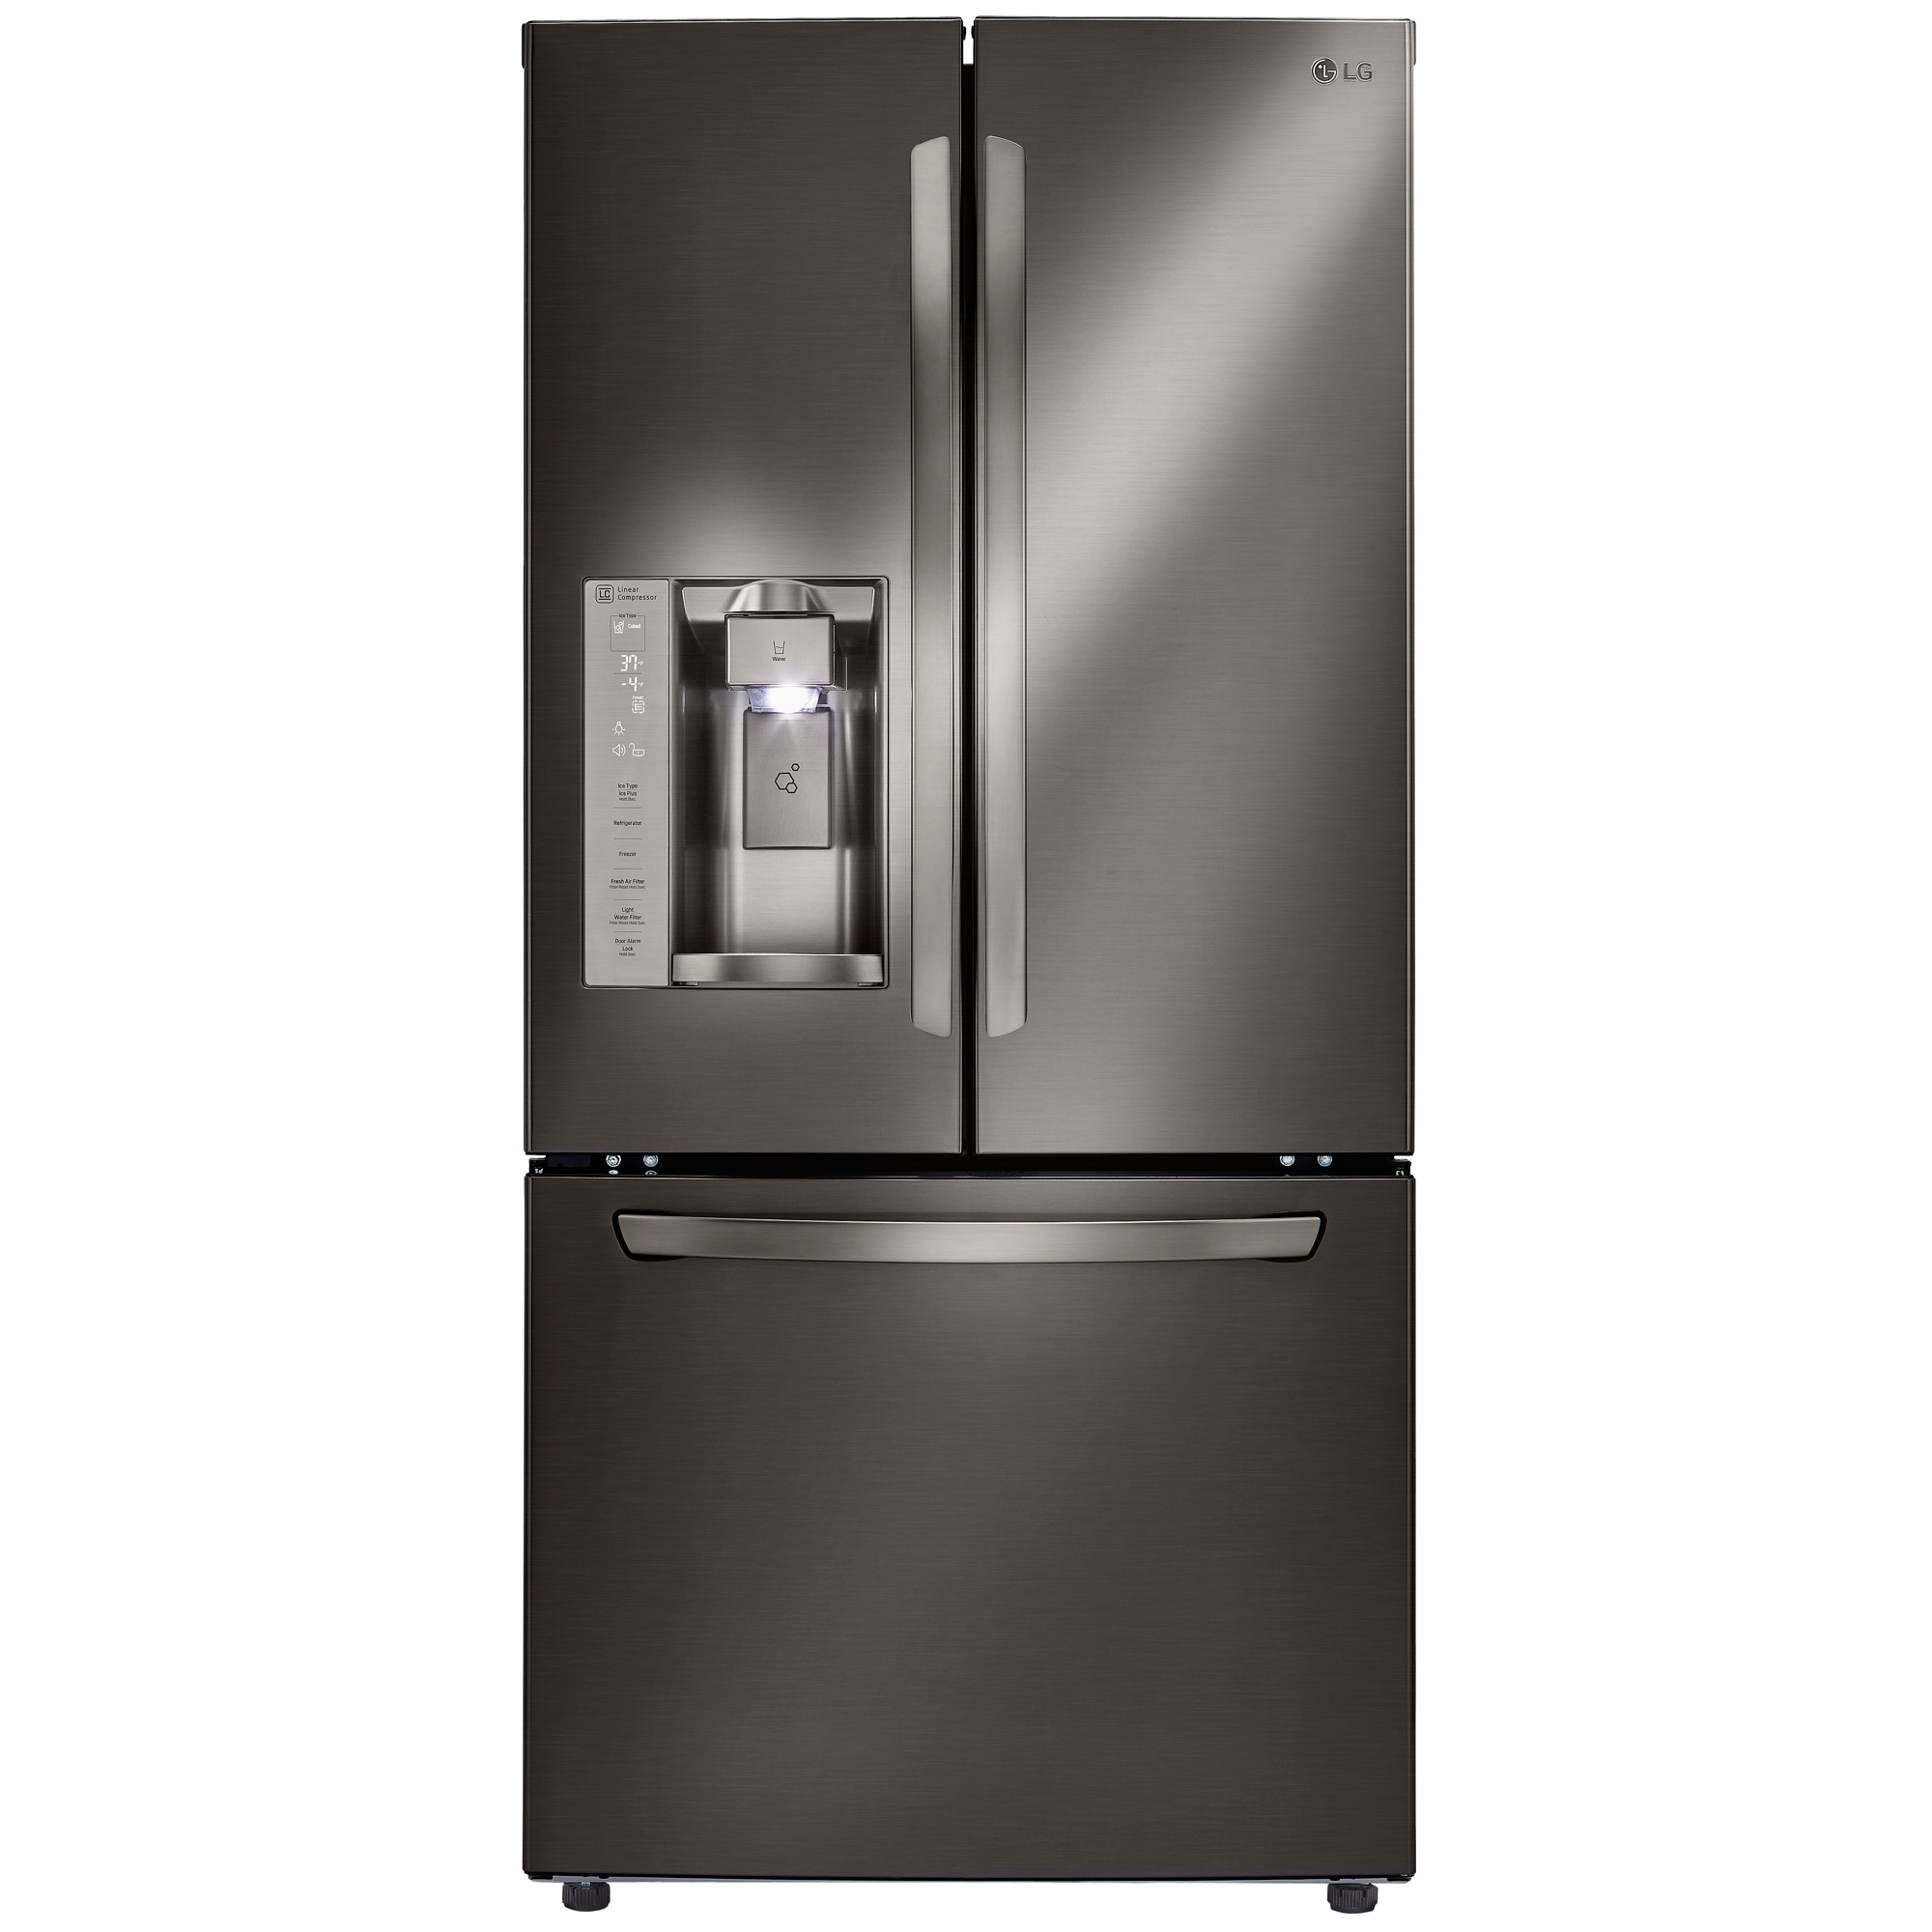 LG LFXS24623D 24.2 Cu. Ft. 33" Wide French Door Refrigerator w/ Ice 33 Inch Wide French Door Refrigerator Black Stainless Steel